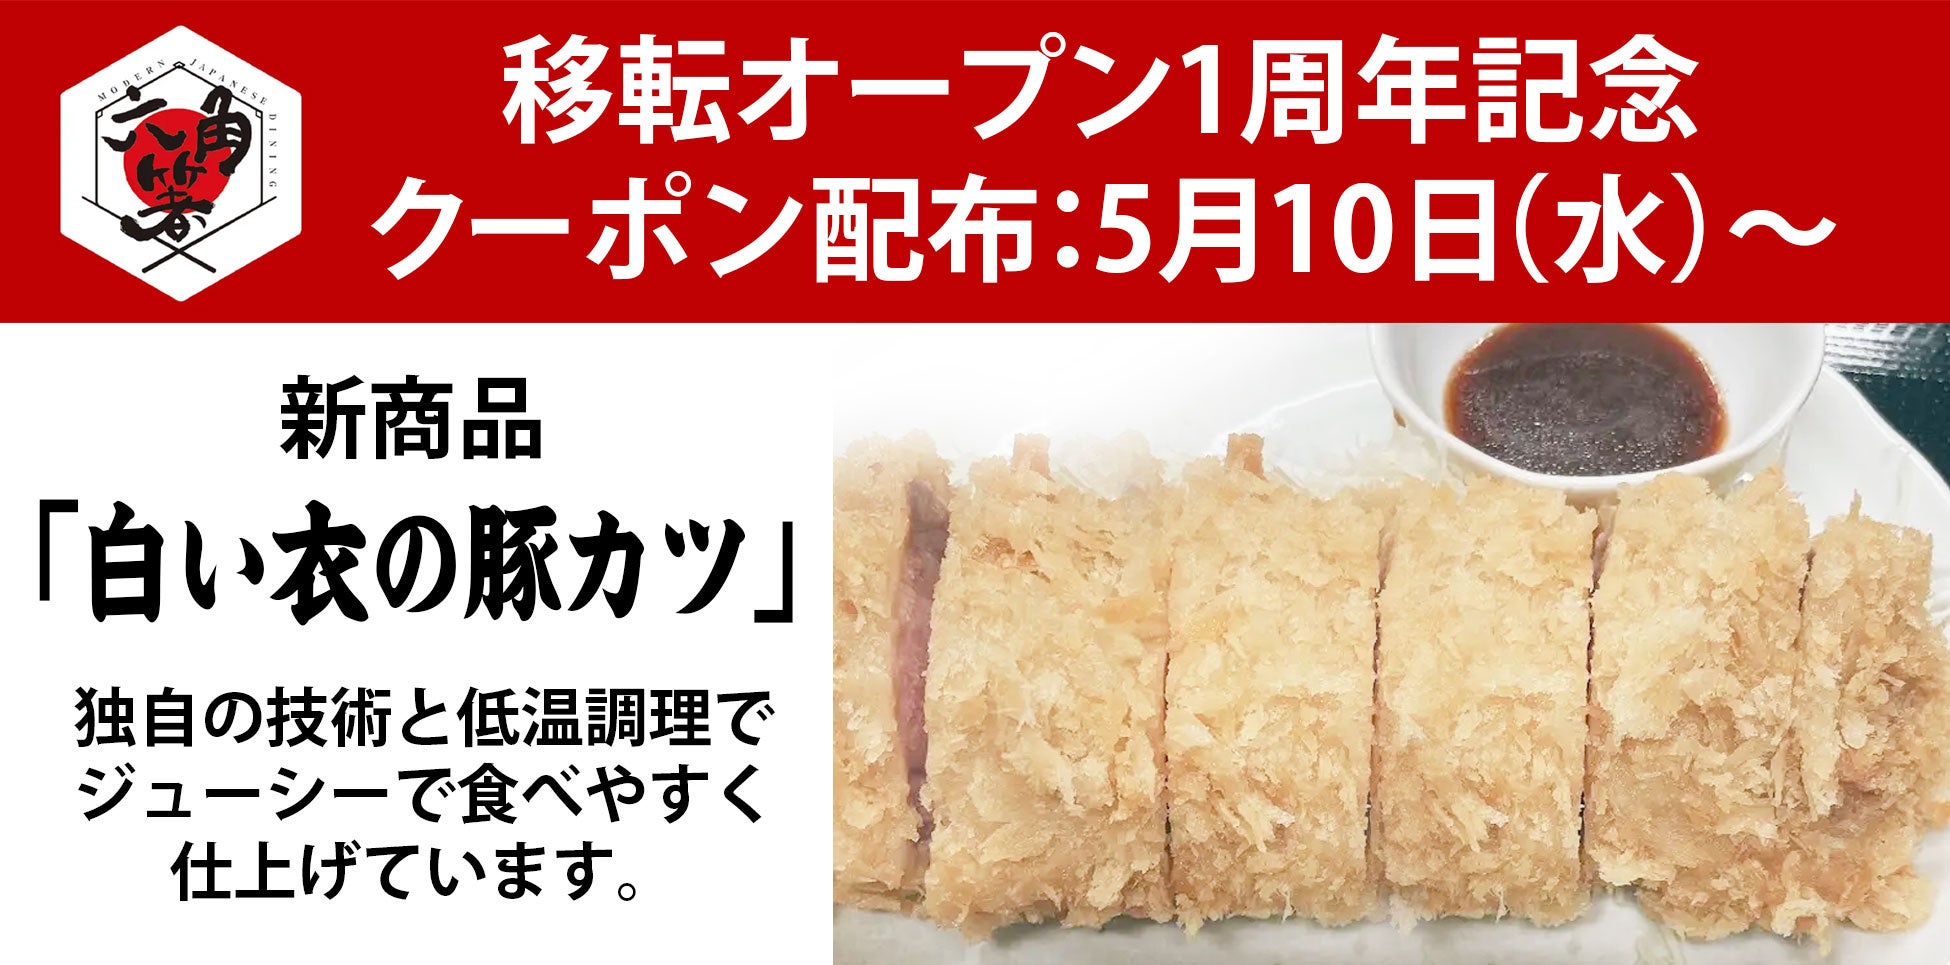 移転オープン1周年記念キャンペーン開催決定‼　横浜市・六角橋エリアに根付くカジュアルレストラン「六角箸」